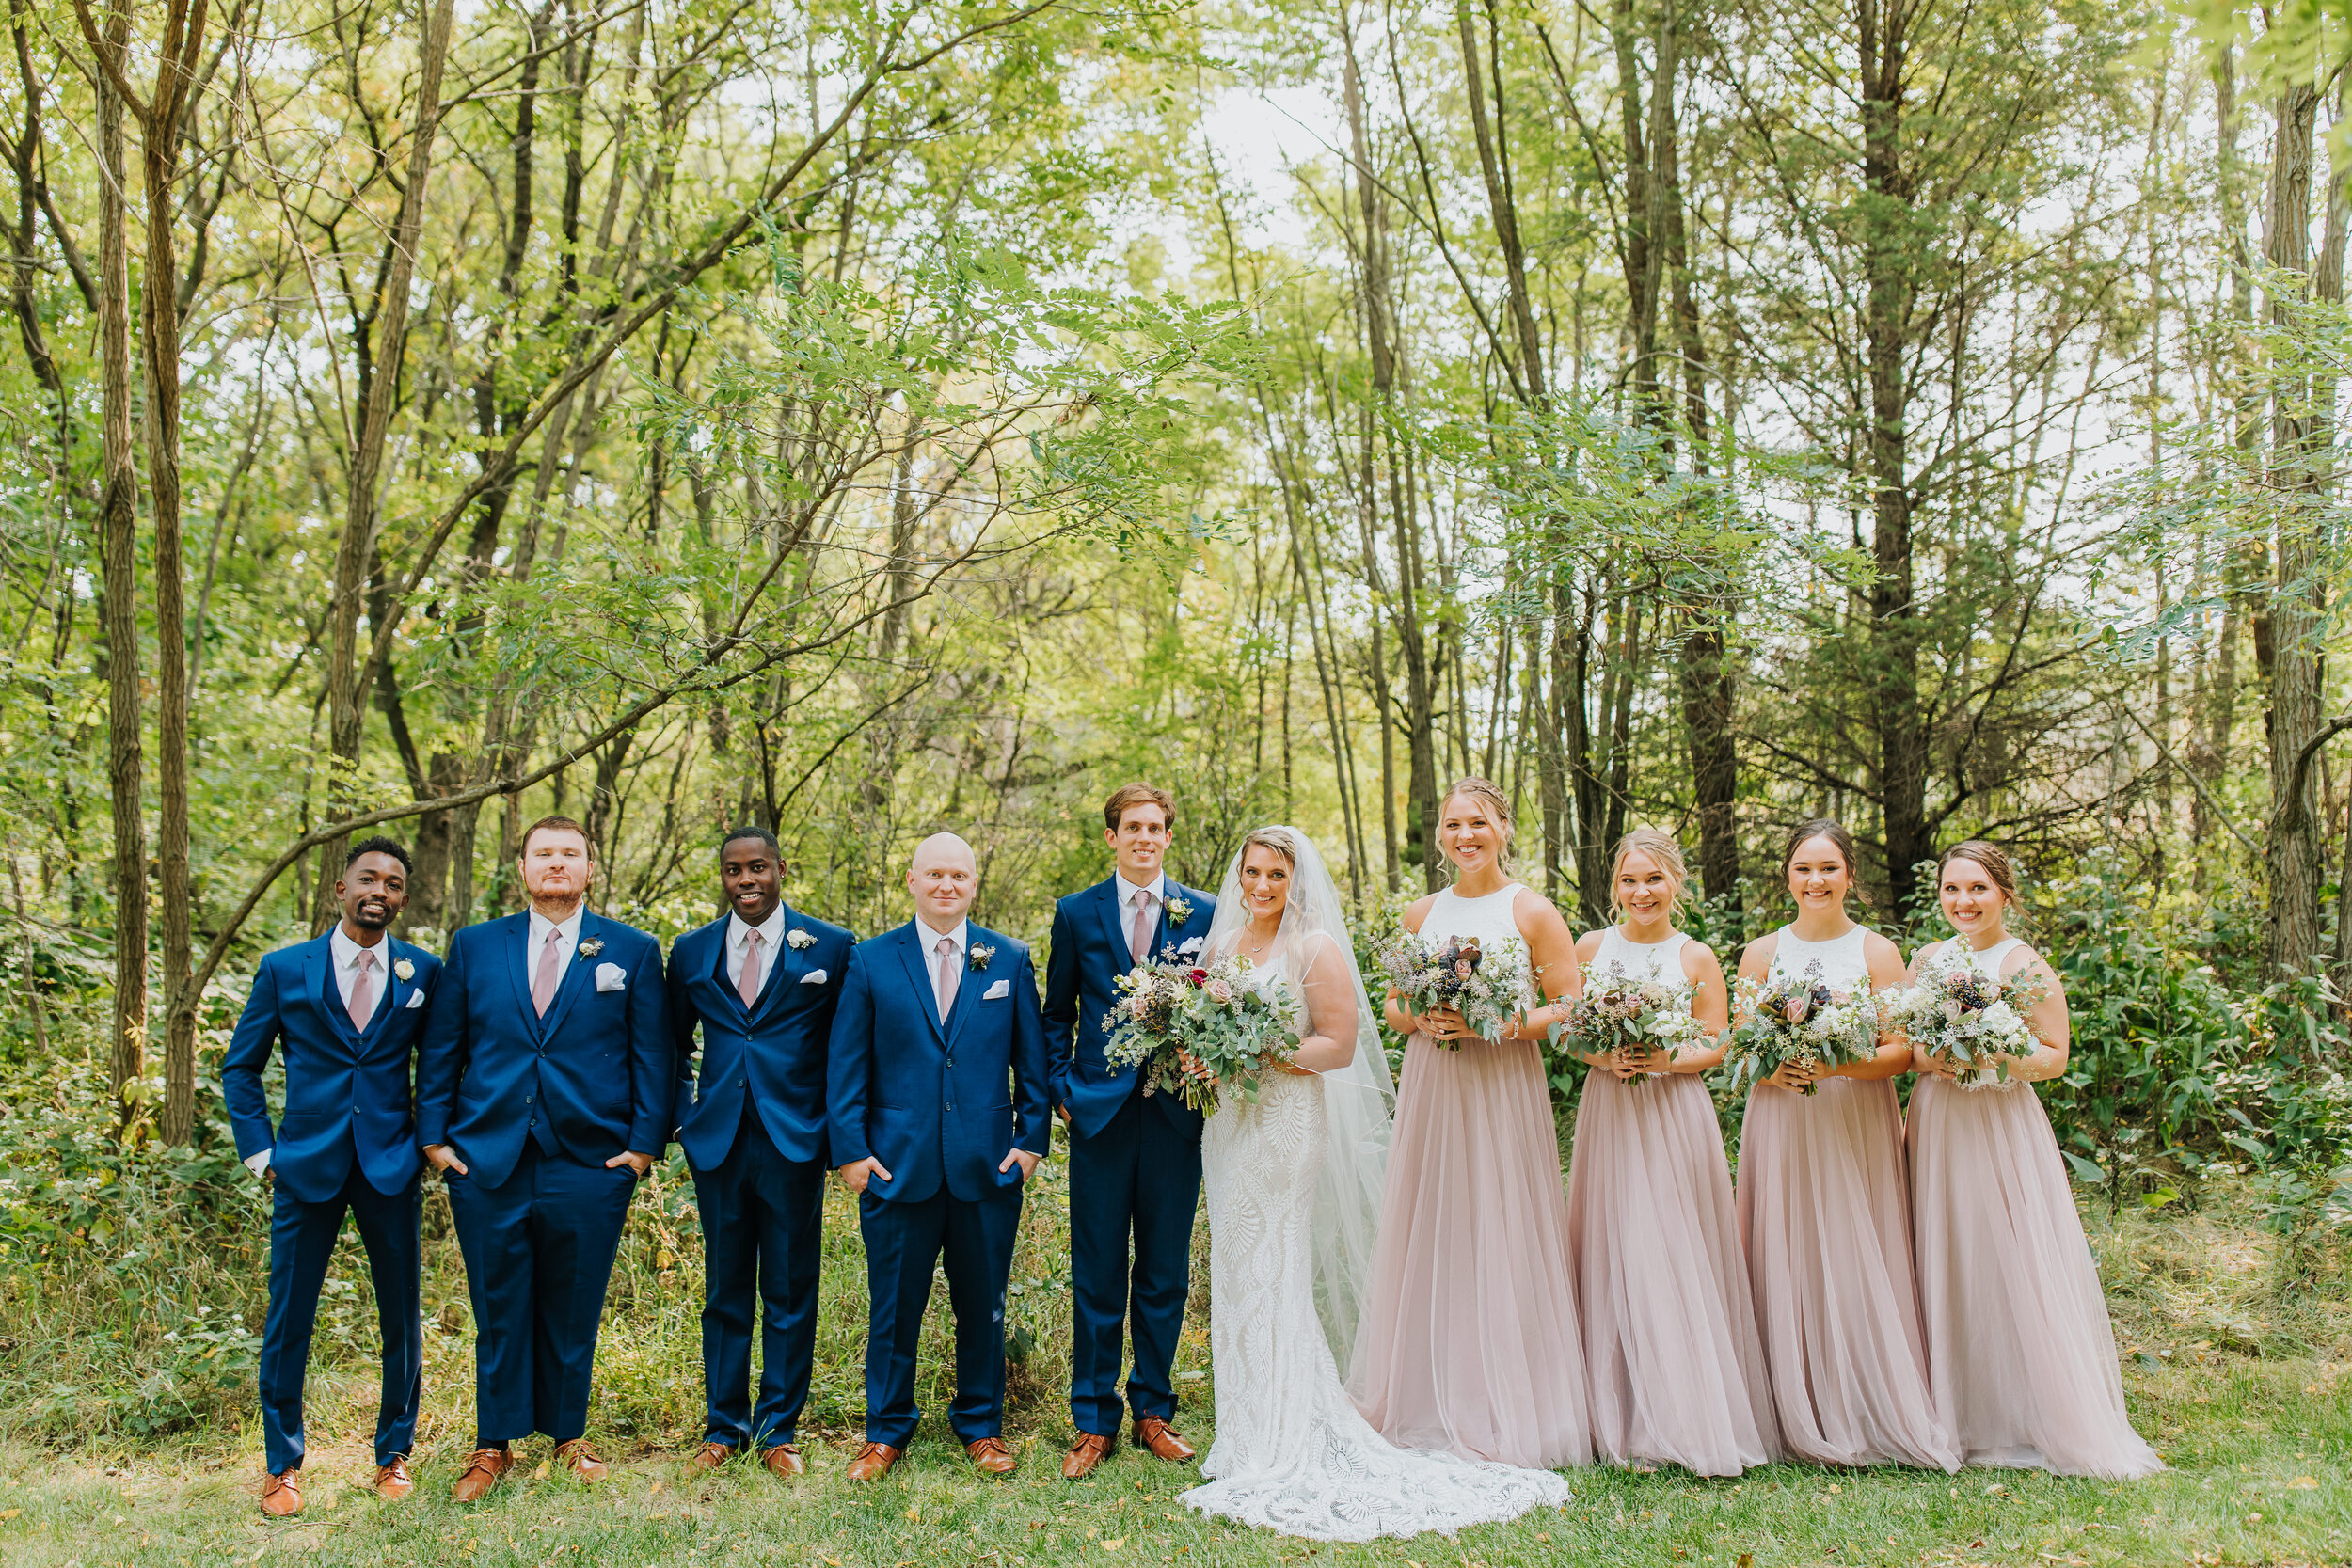 Ashton & Dan - Married - Nathaniel Jensen Photography - Omaha Nebraska Wedding Photographer-165.jpg